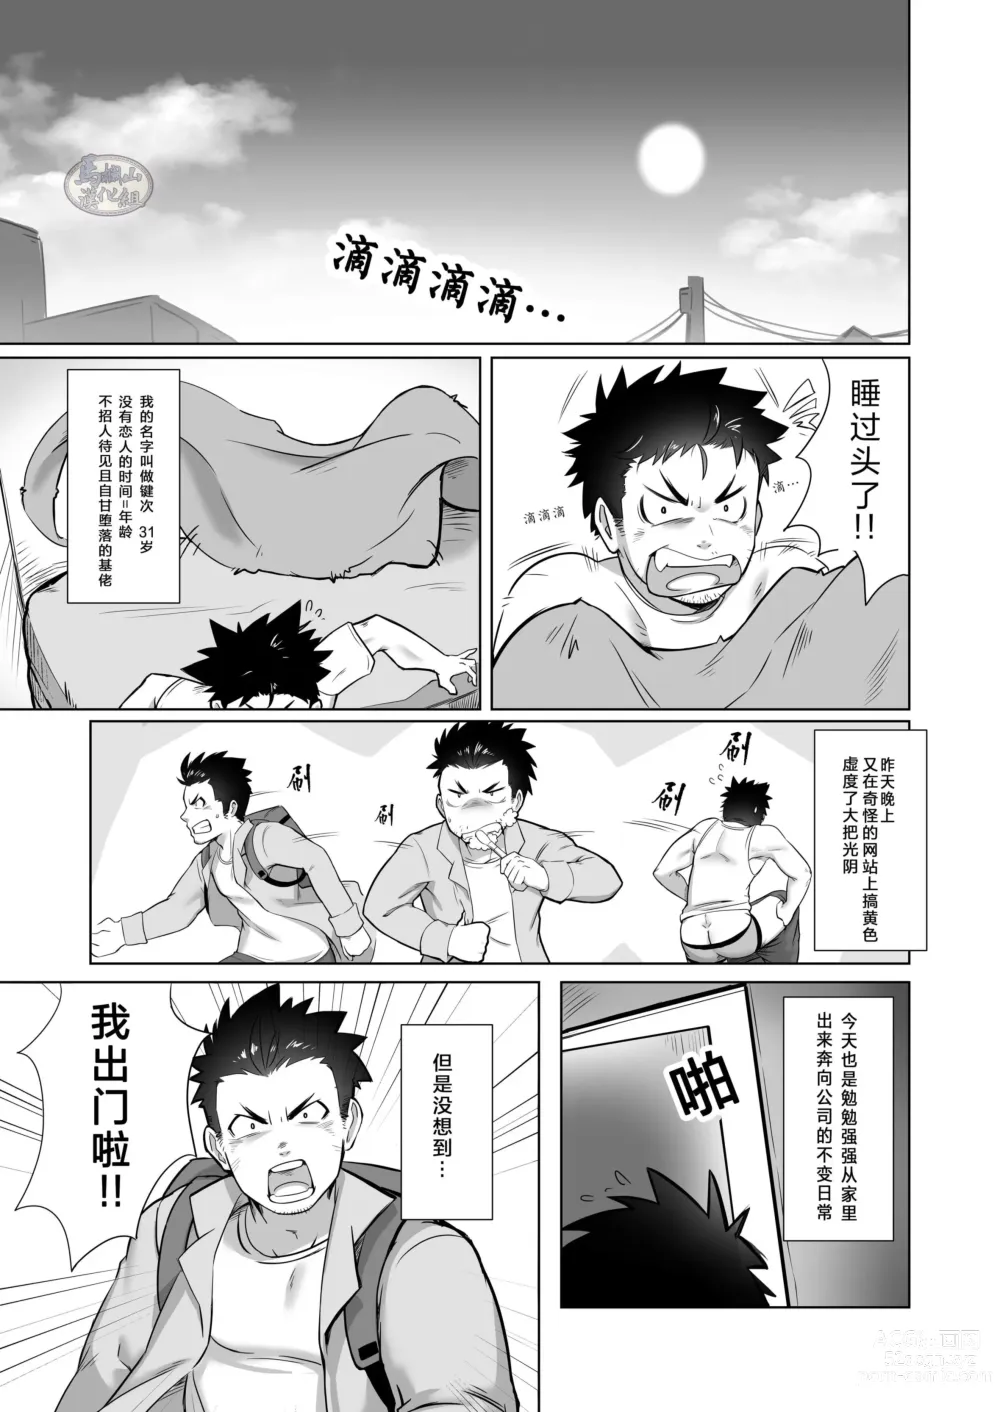 Page 3 of doujinshi 关于我在转生之后身边全是肌肉男的奇闻轶事